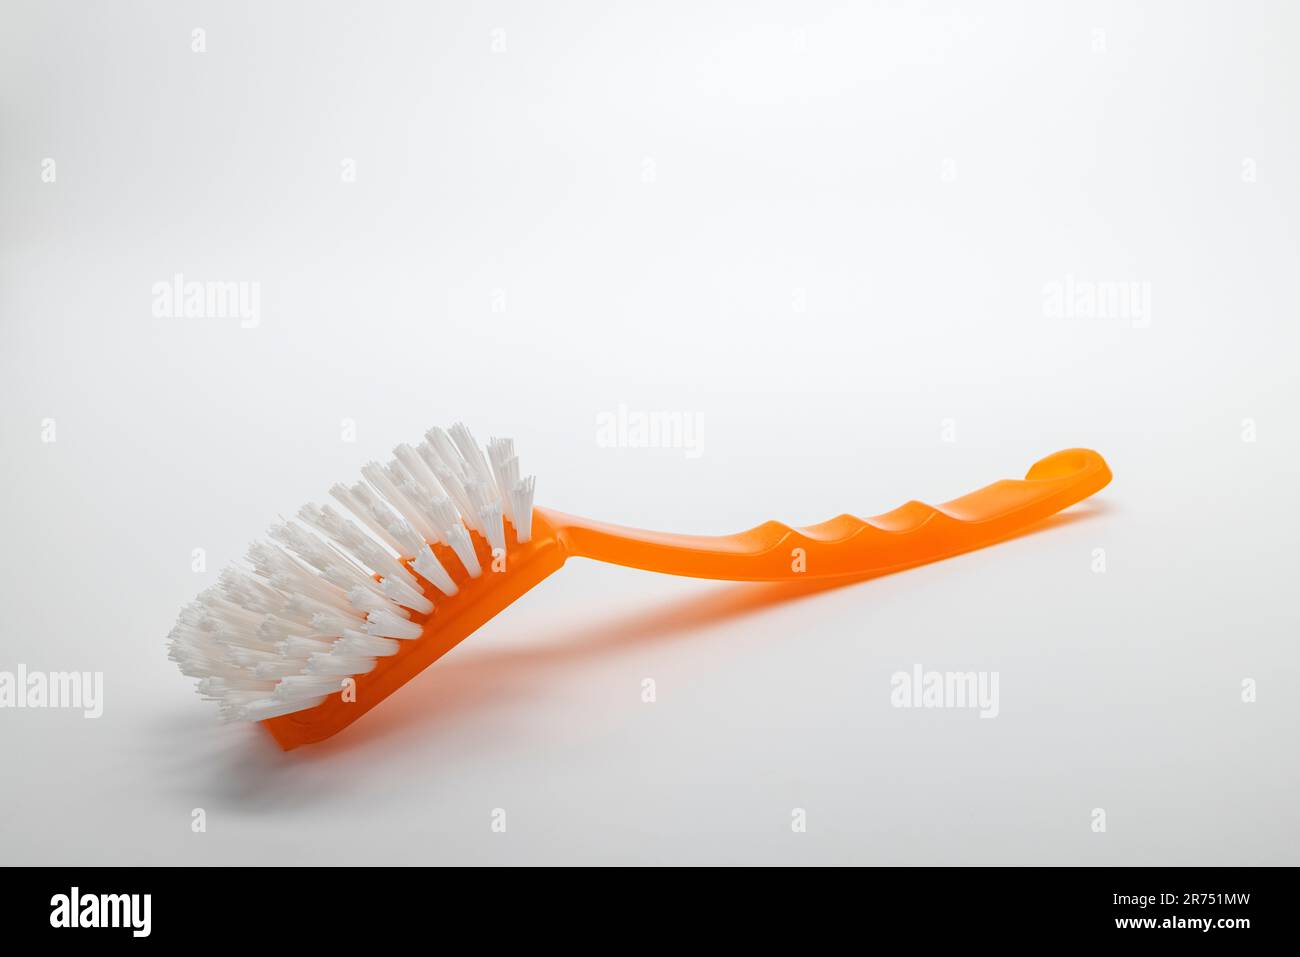 Orange dish brush, white background, Stock Photo